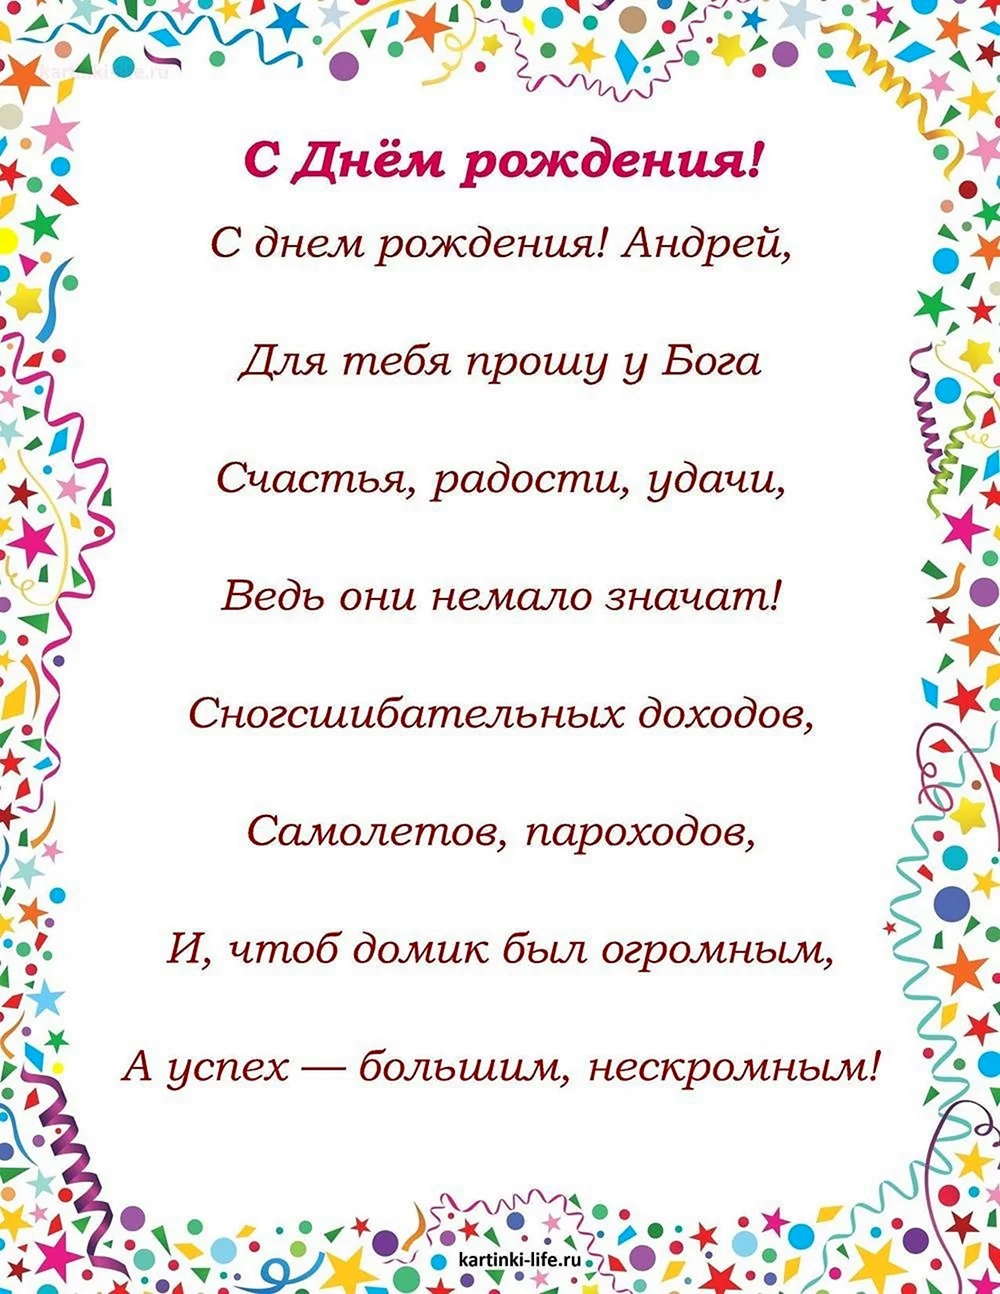 Поздравление Ивану с днем рождения в стихах